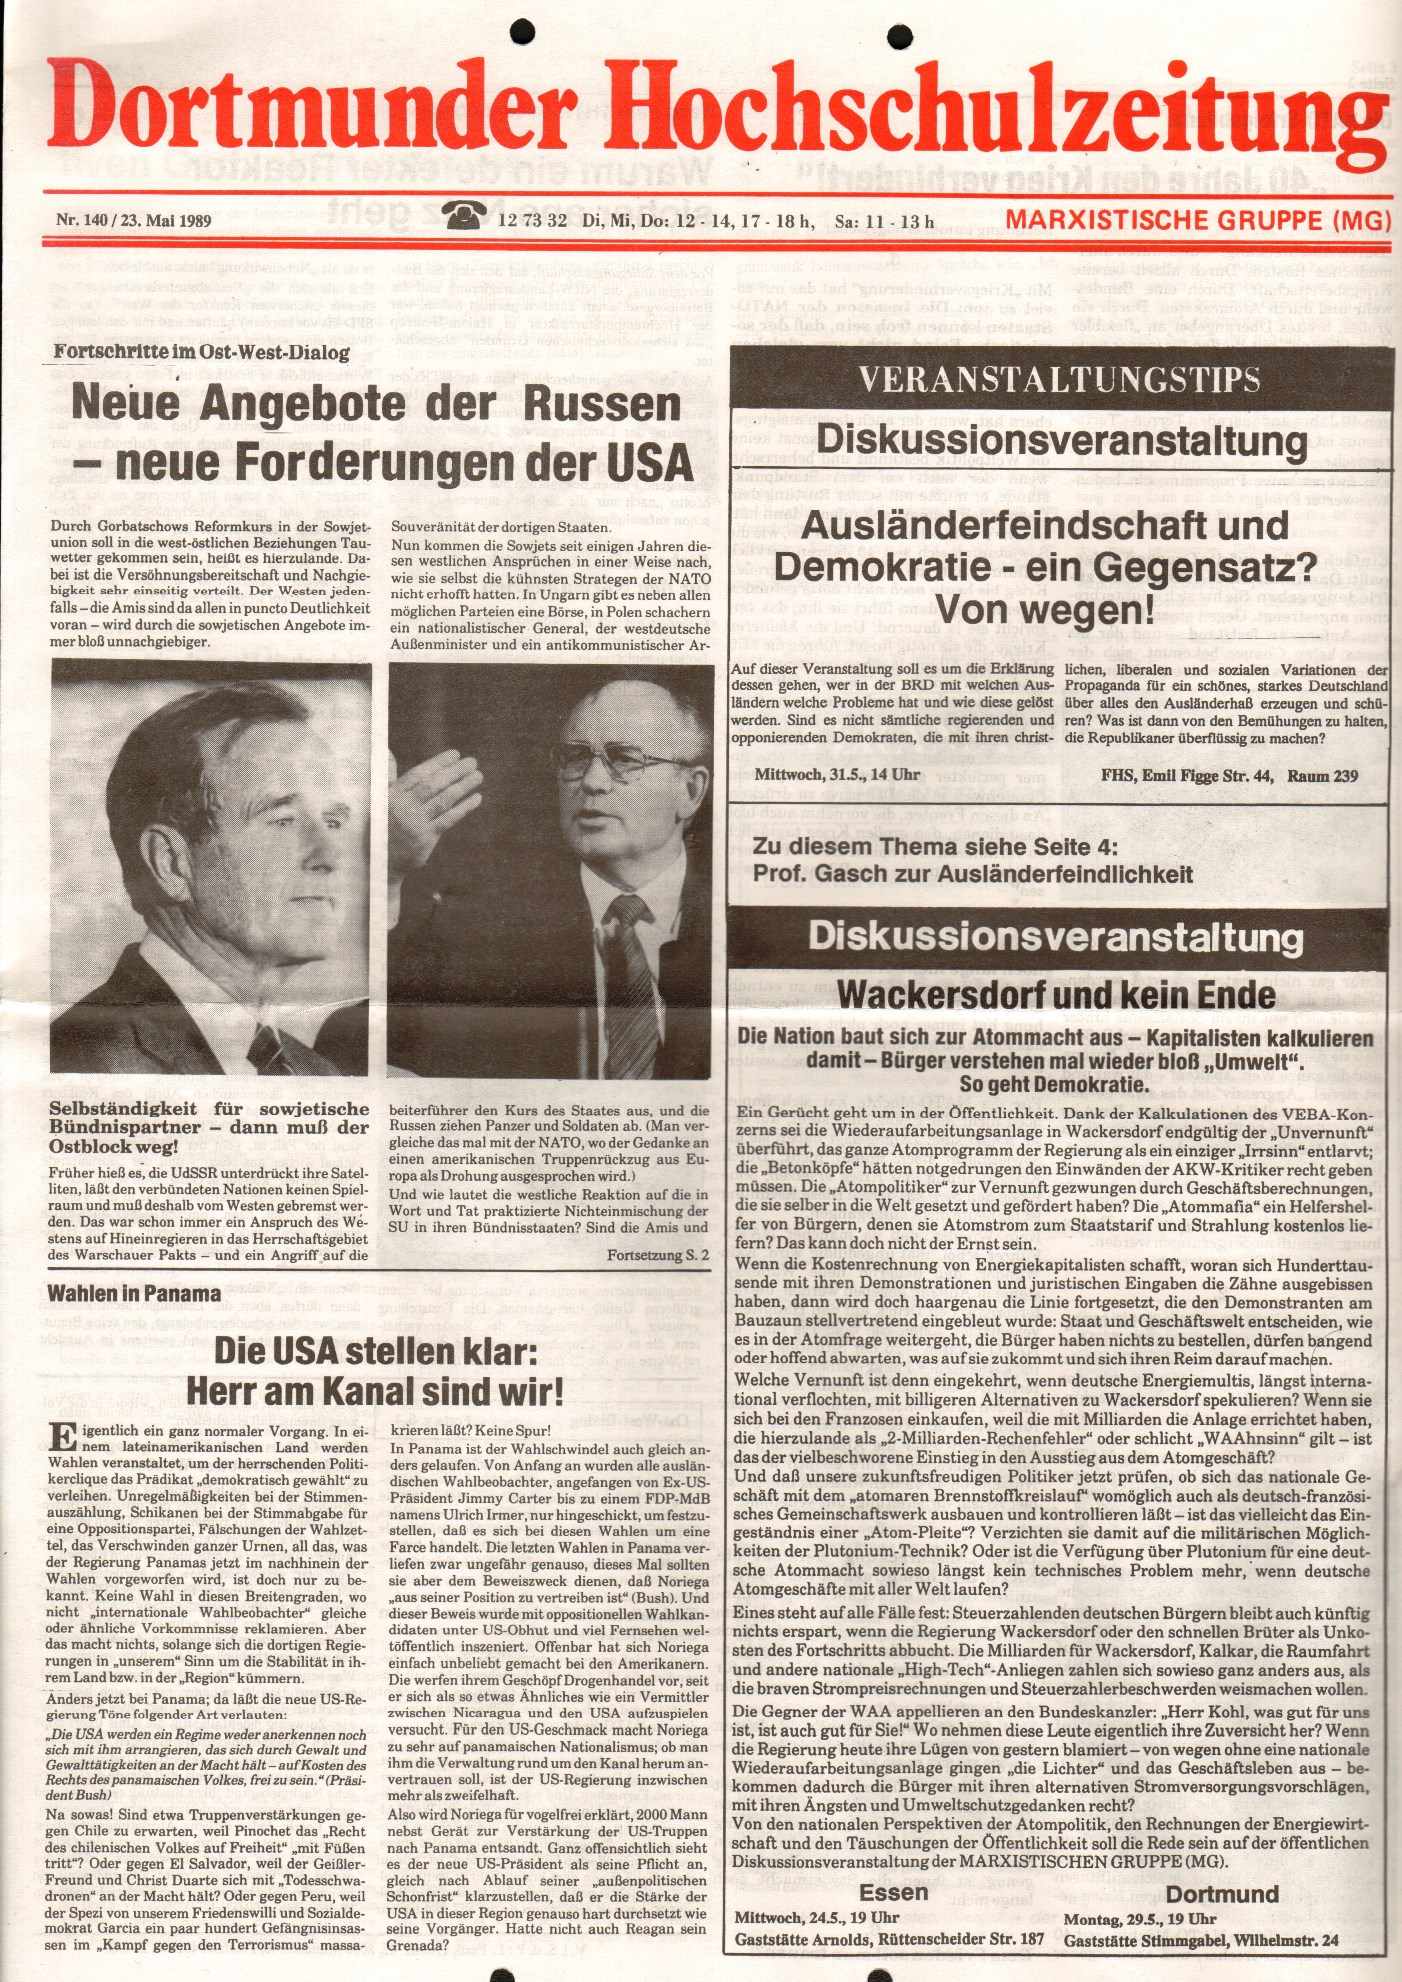 MG_Dortmunder_Hochschulzeitung_19890523_01